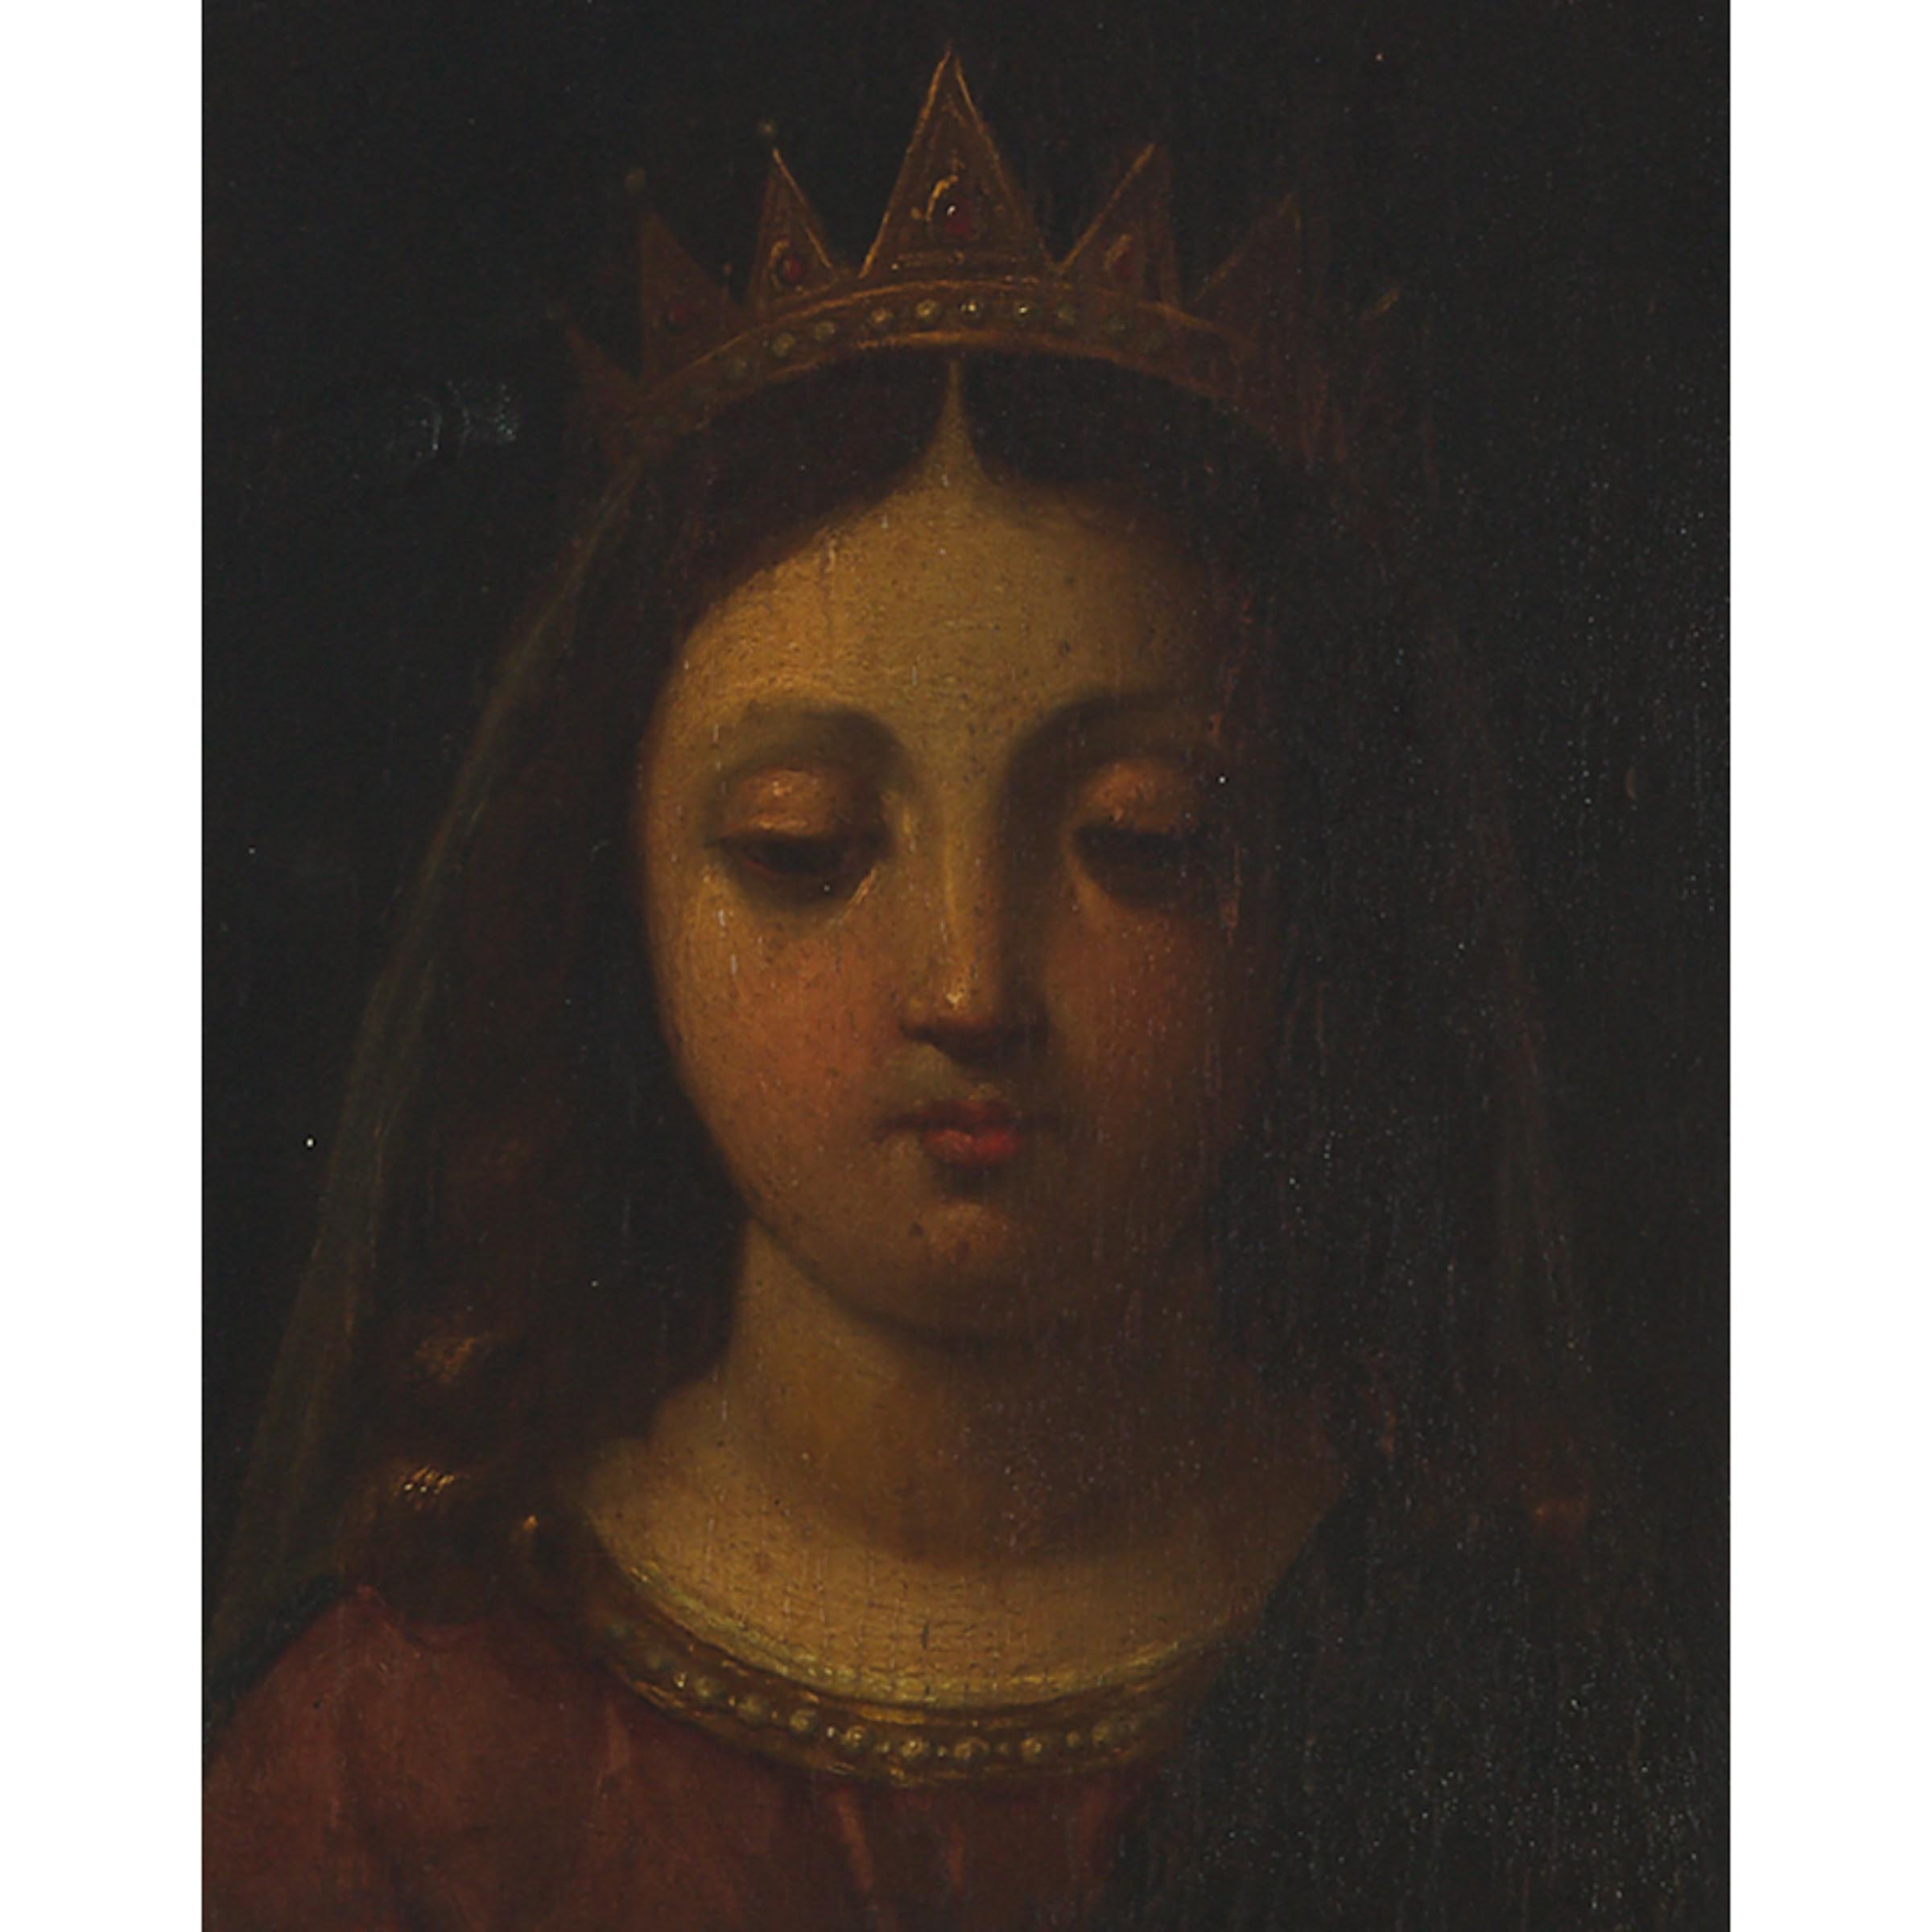 FOLLOWER OF ANDREA DEL SARTO (1486-1531), Italian